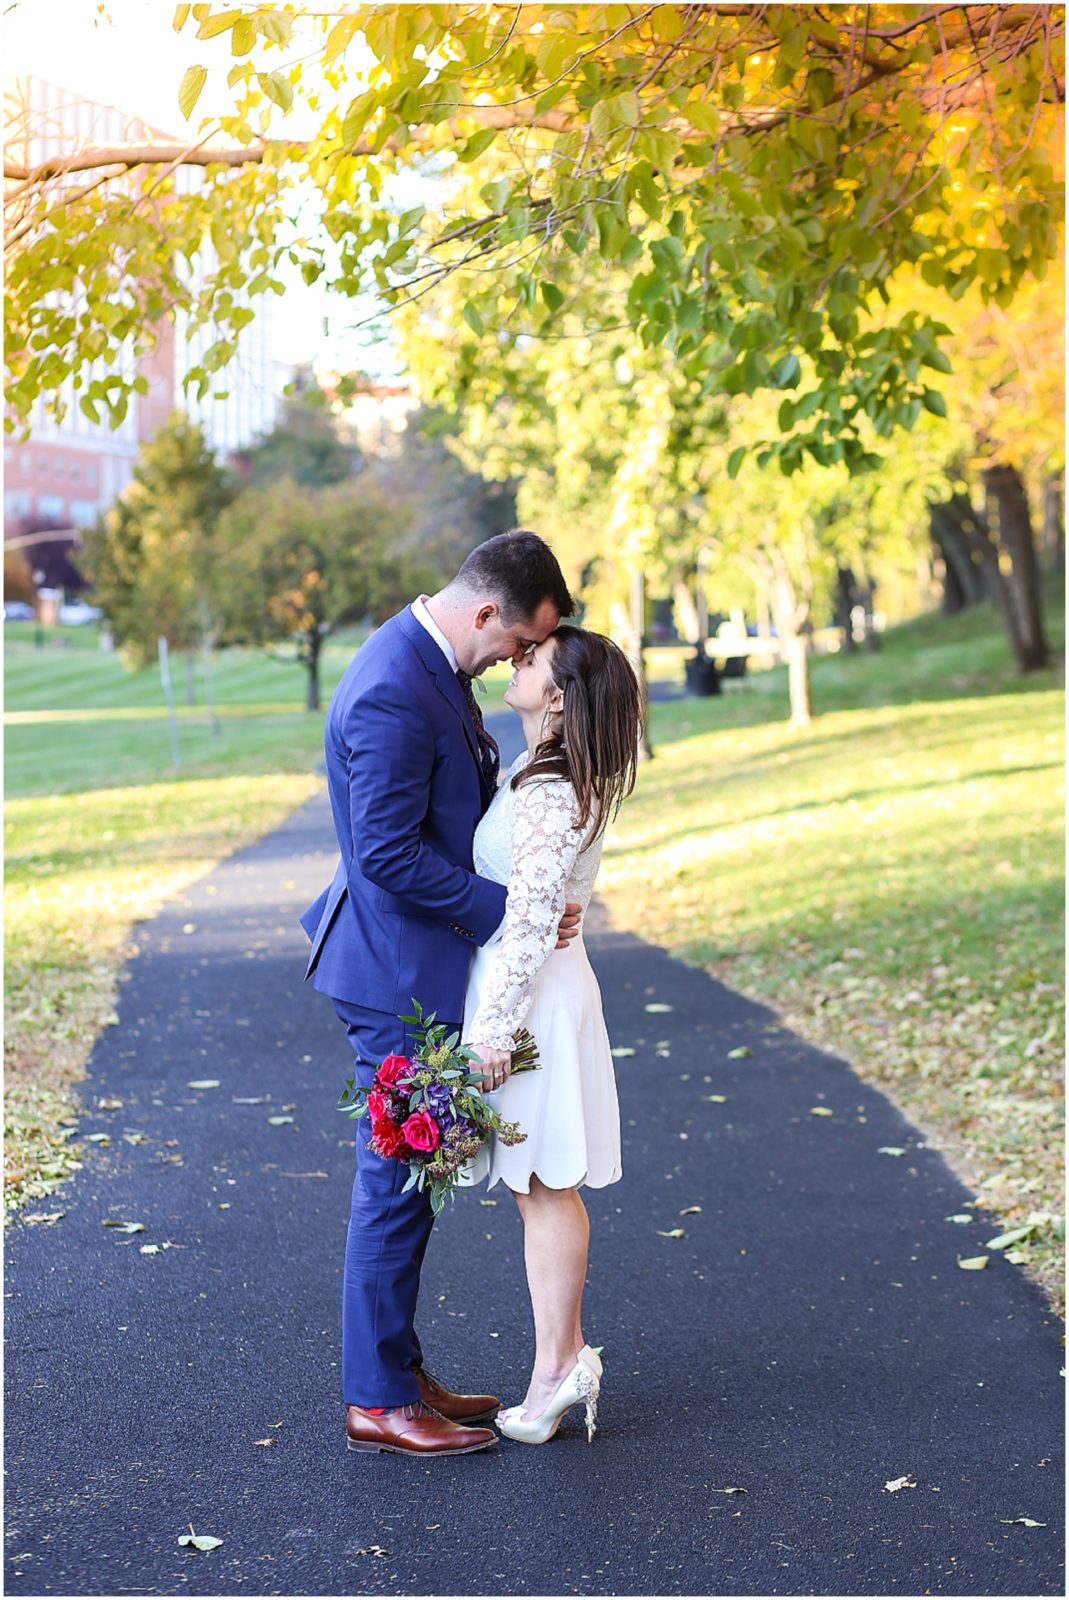 Kansas City Elopement - KC Wedding Photography - Josh and Jenna - Wedding Photos at the Plaza